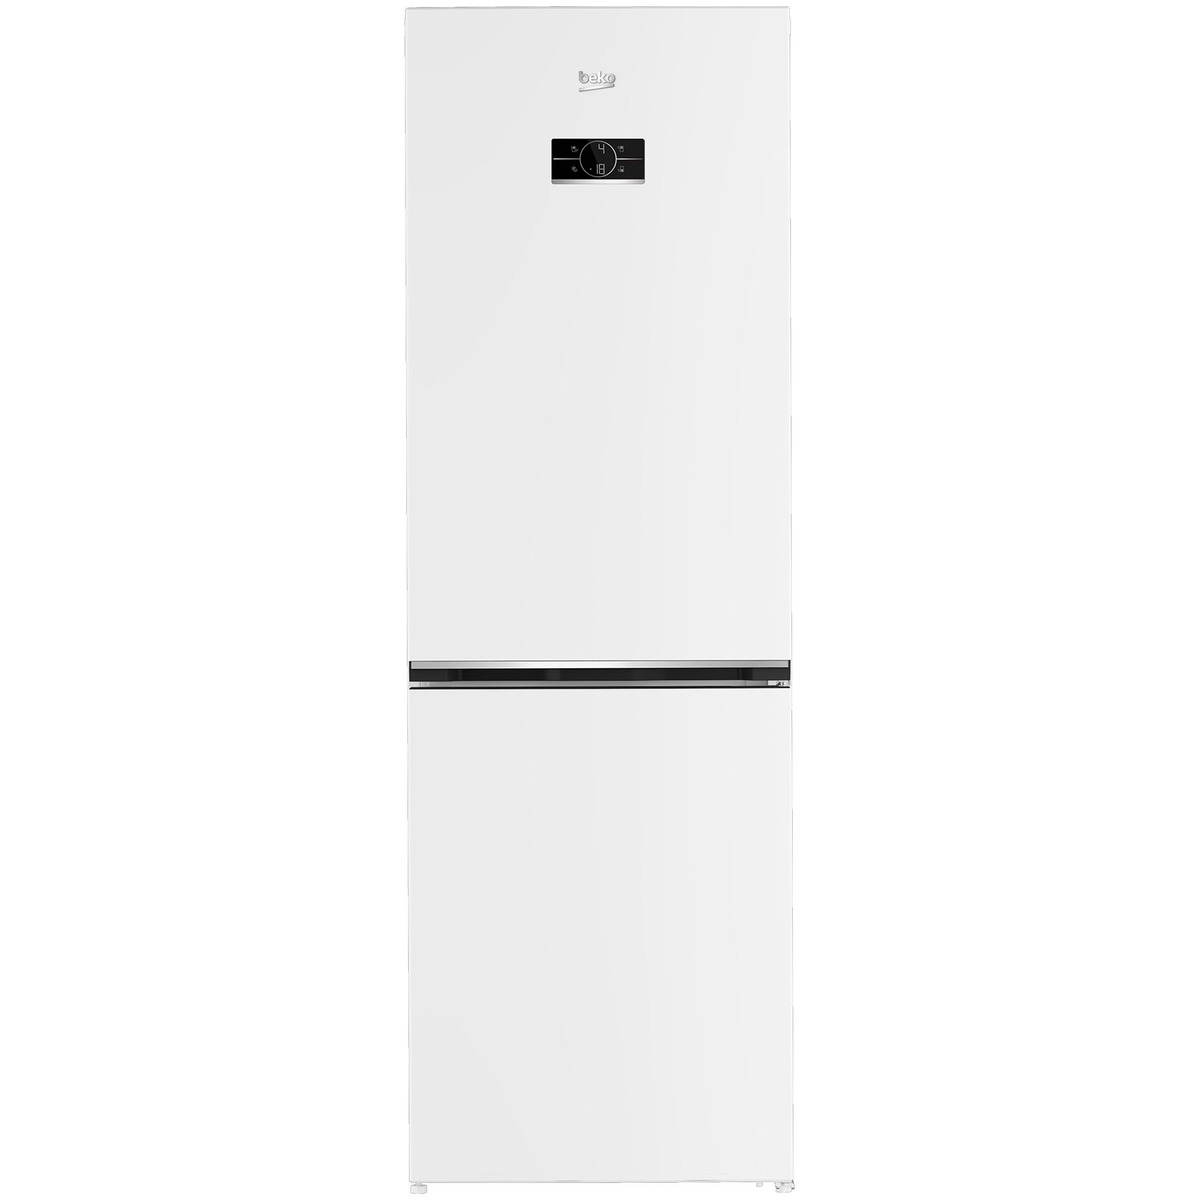 Холодильник Beko B3RCNK362HW (Цвет: White)